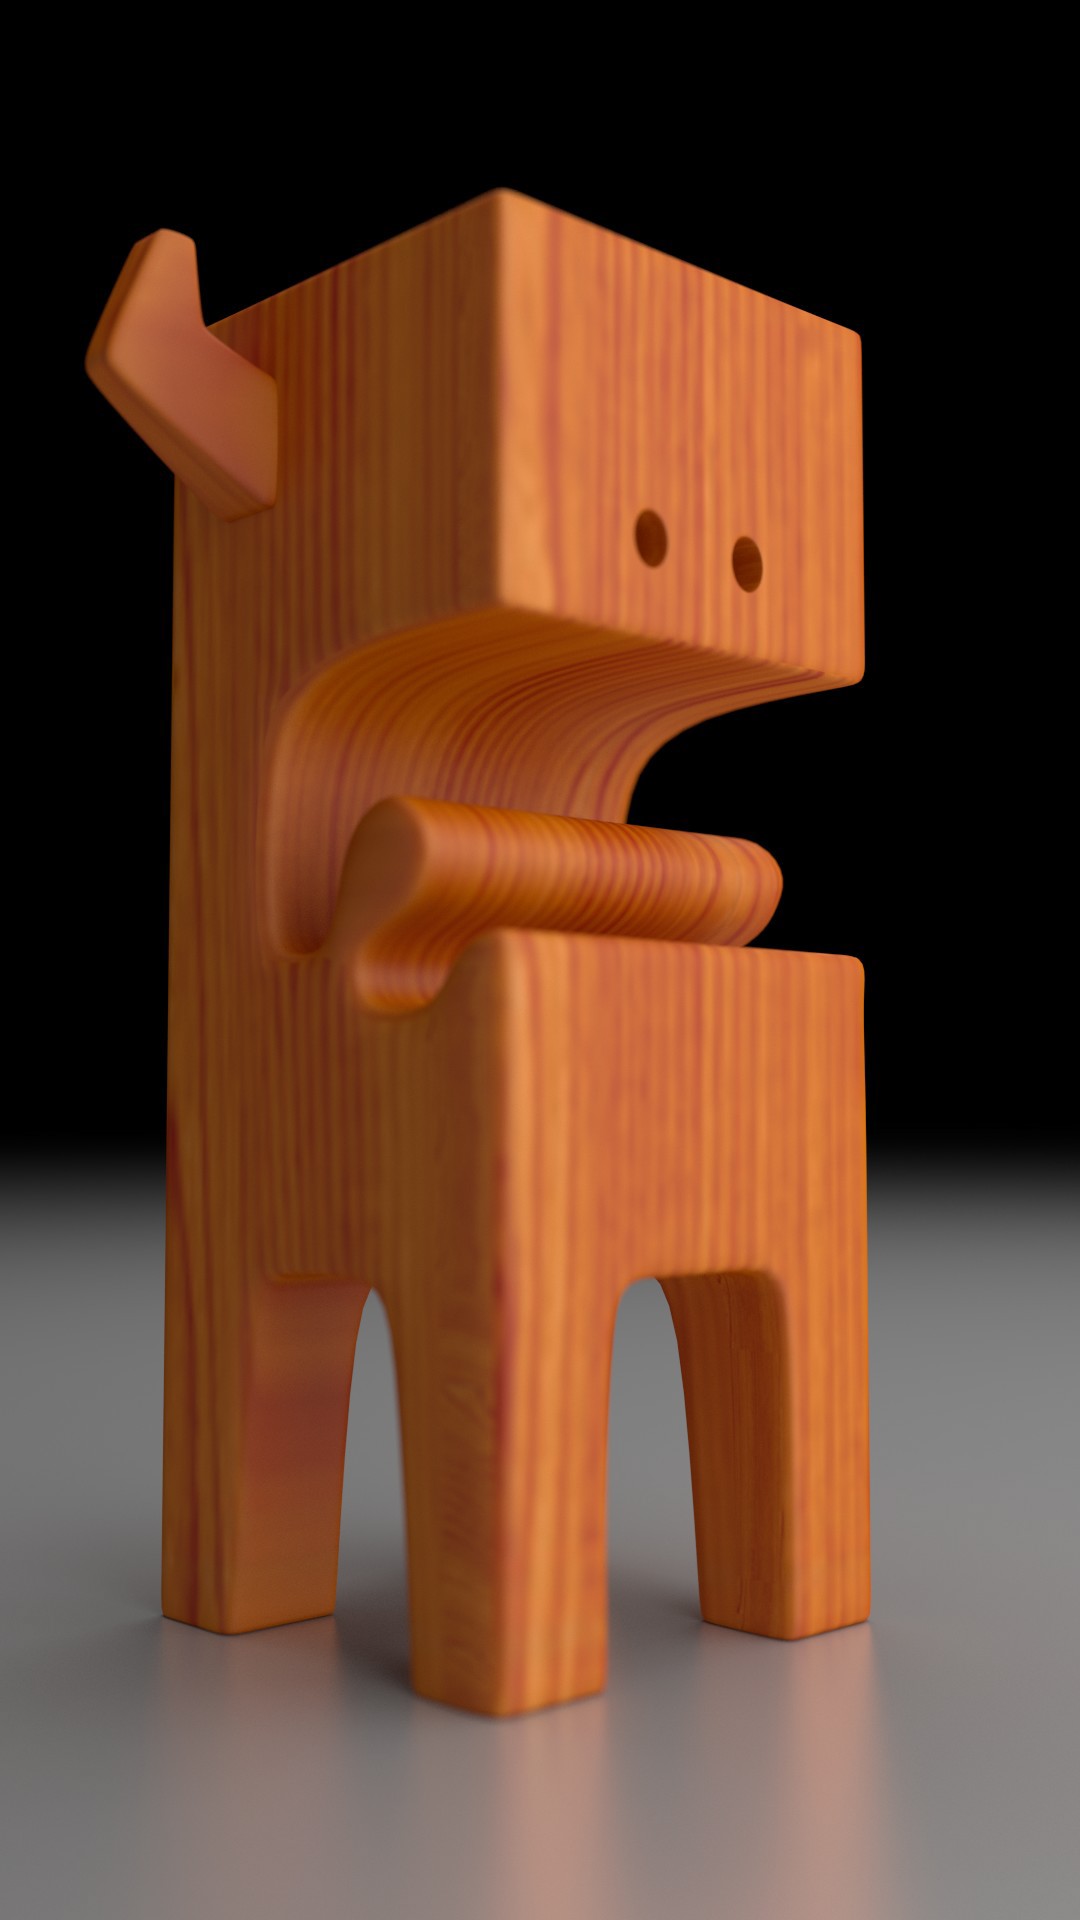 3D model wood toy blender